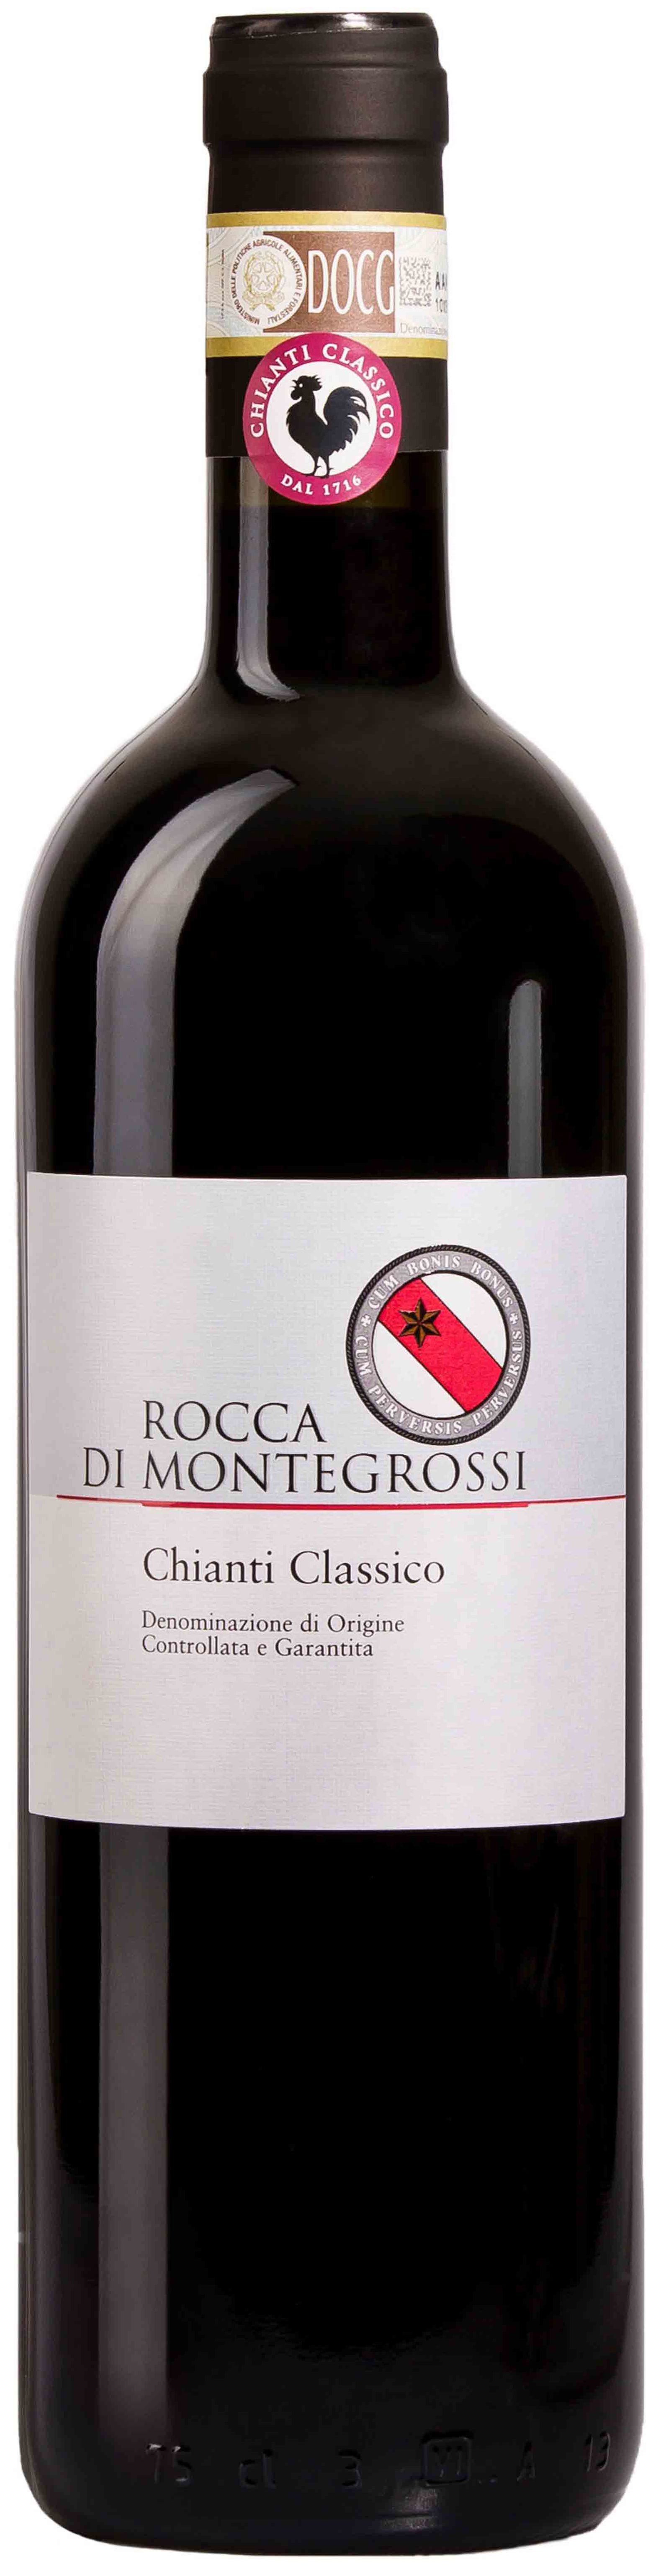 Rocca Di Montegrossi, Chianti Classico, 2009